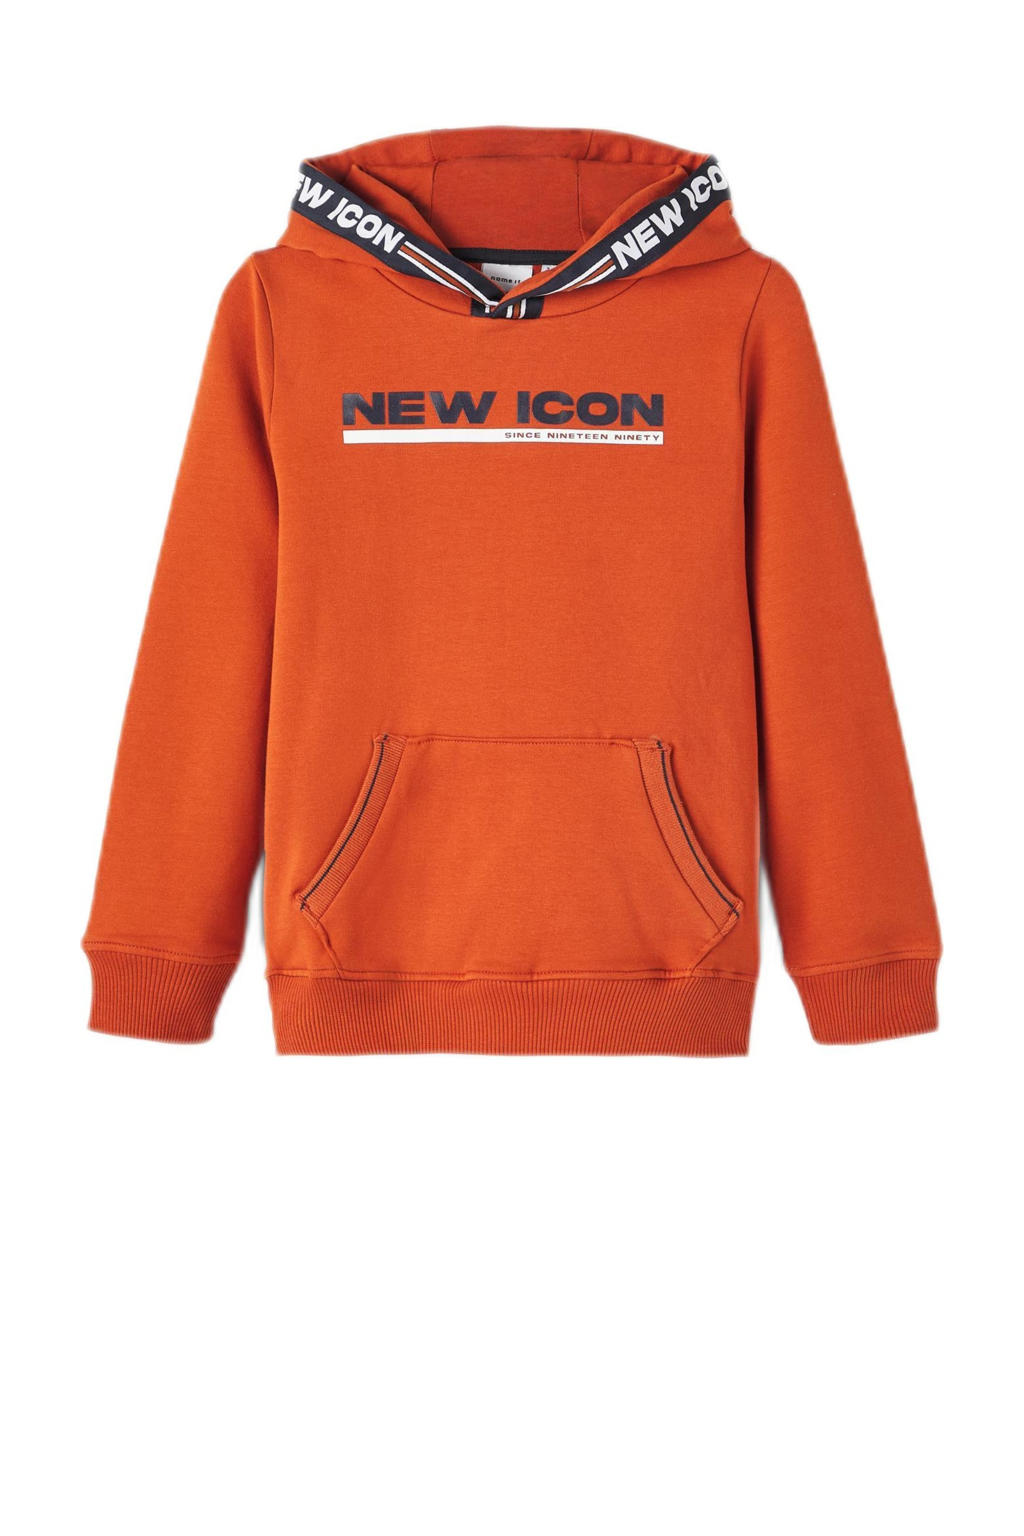 Oranje jongens NAME IT hoodie van duurzame sweatstof met printopdruk, lange mouwen en capuchon